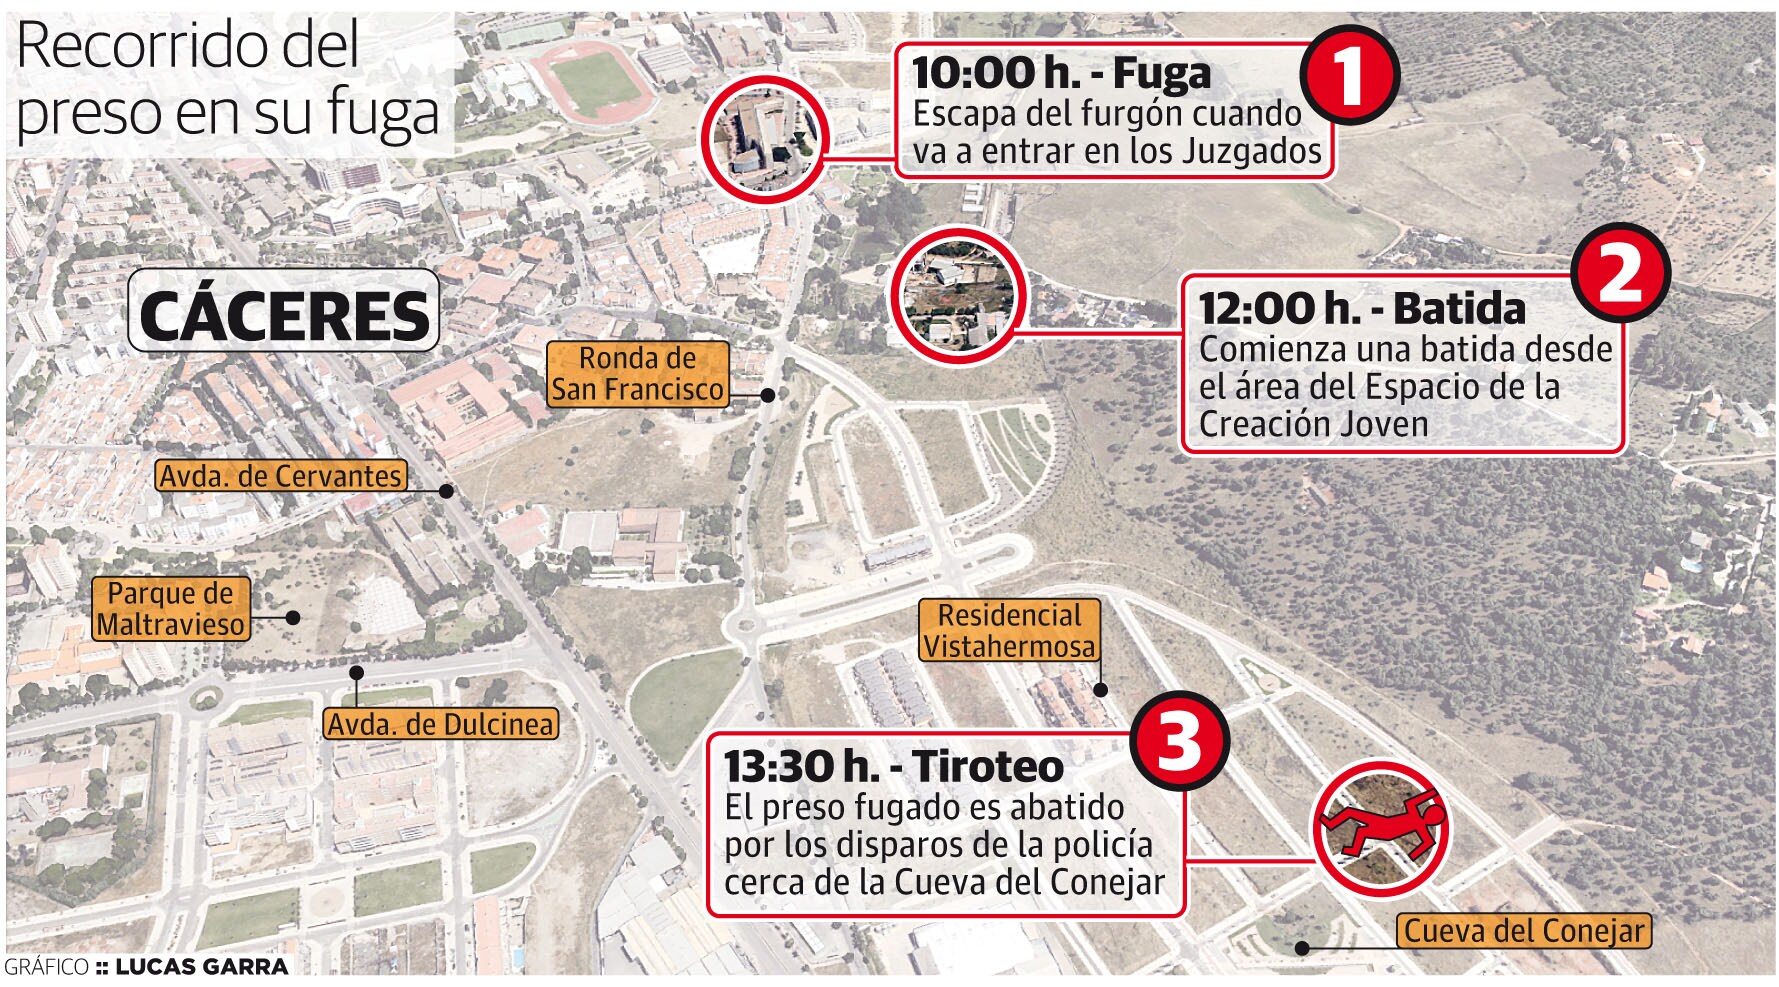 El interno de la prisión de Cáceres se fugó del Palacio de Justicia de la ciudad, desde donde emprendió una huída que terminó en el polígono de Vistahermosa, cerca de la Cueva del Conejar